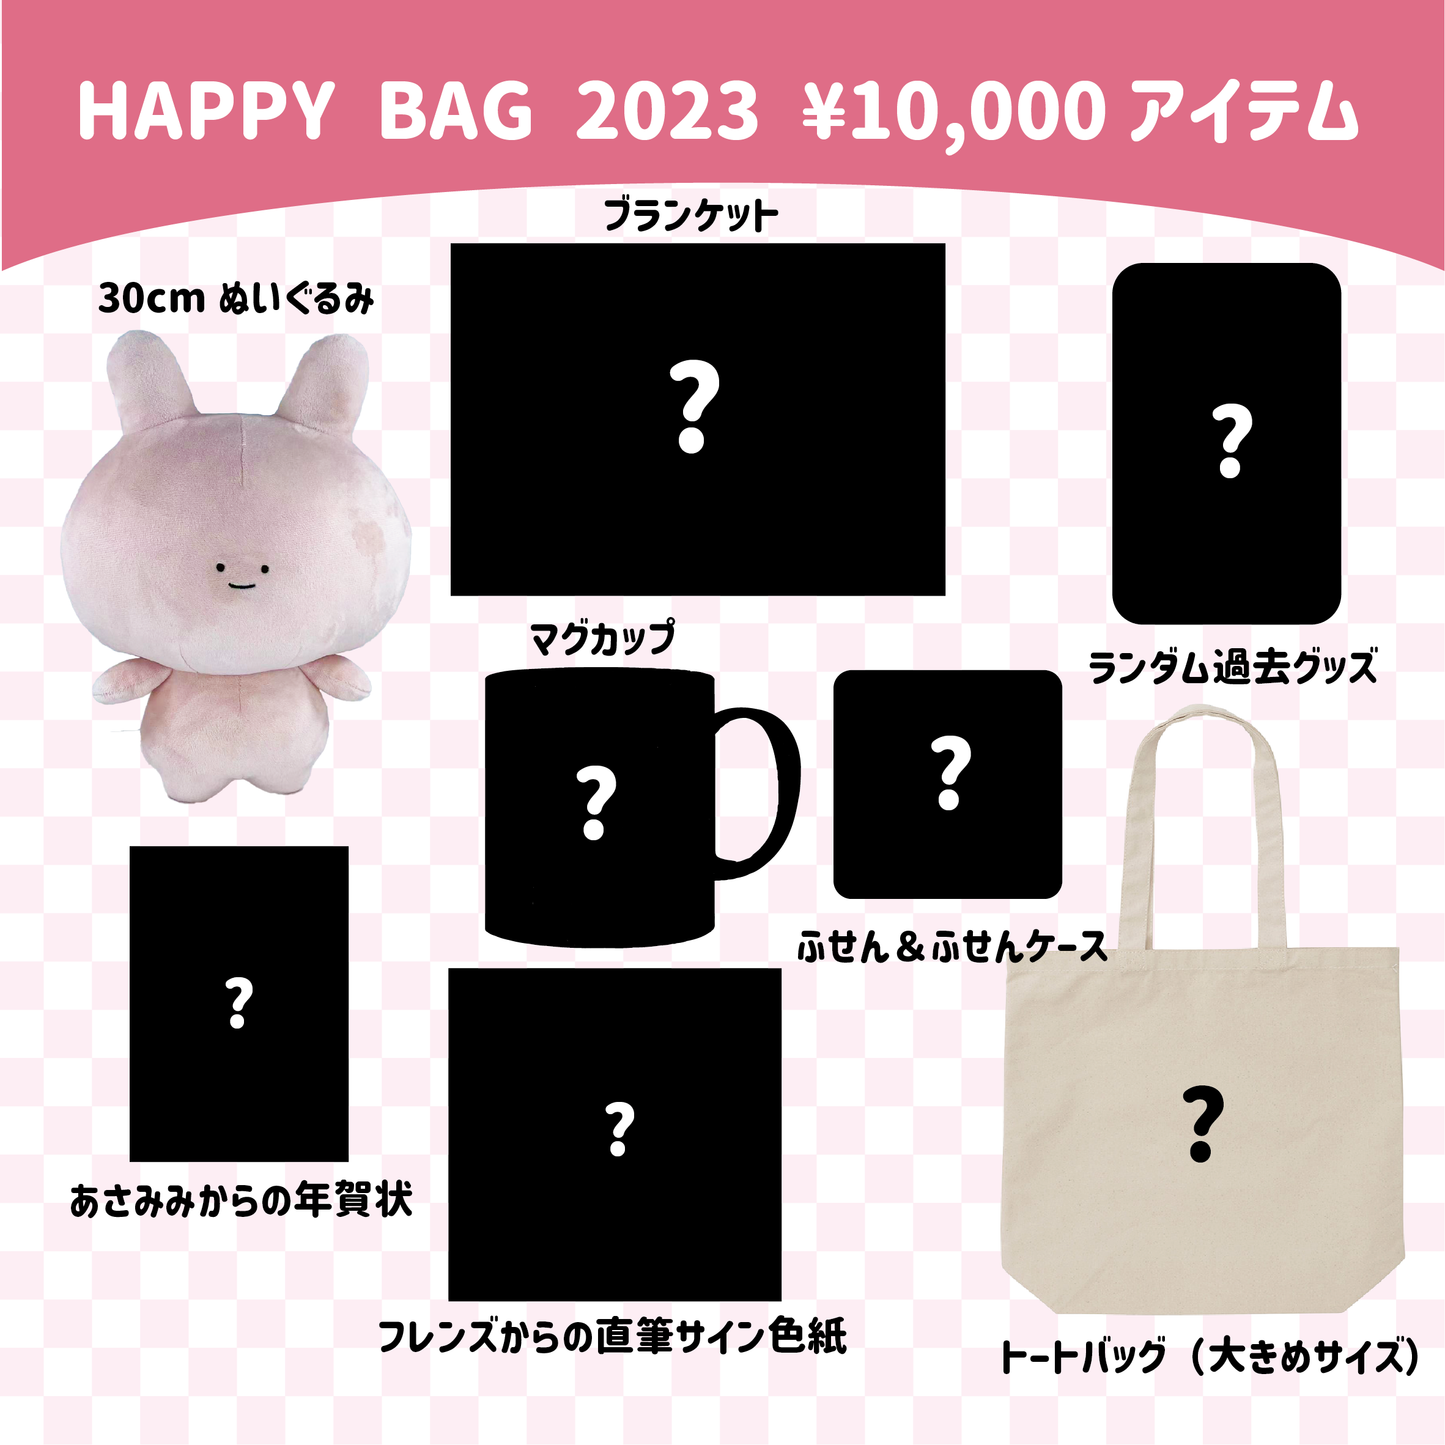 【あさみみちゃん】ASAMIMI HAPPY BAG （¥10,000）